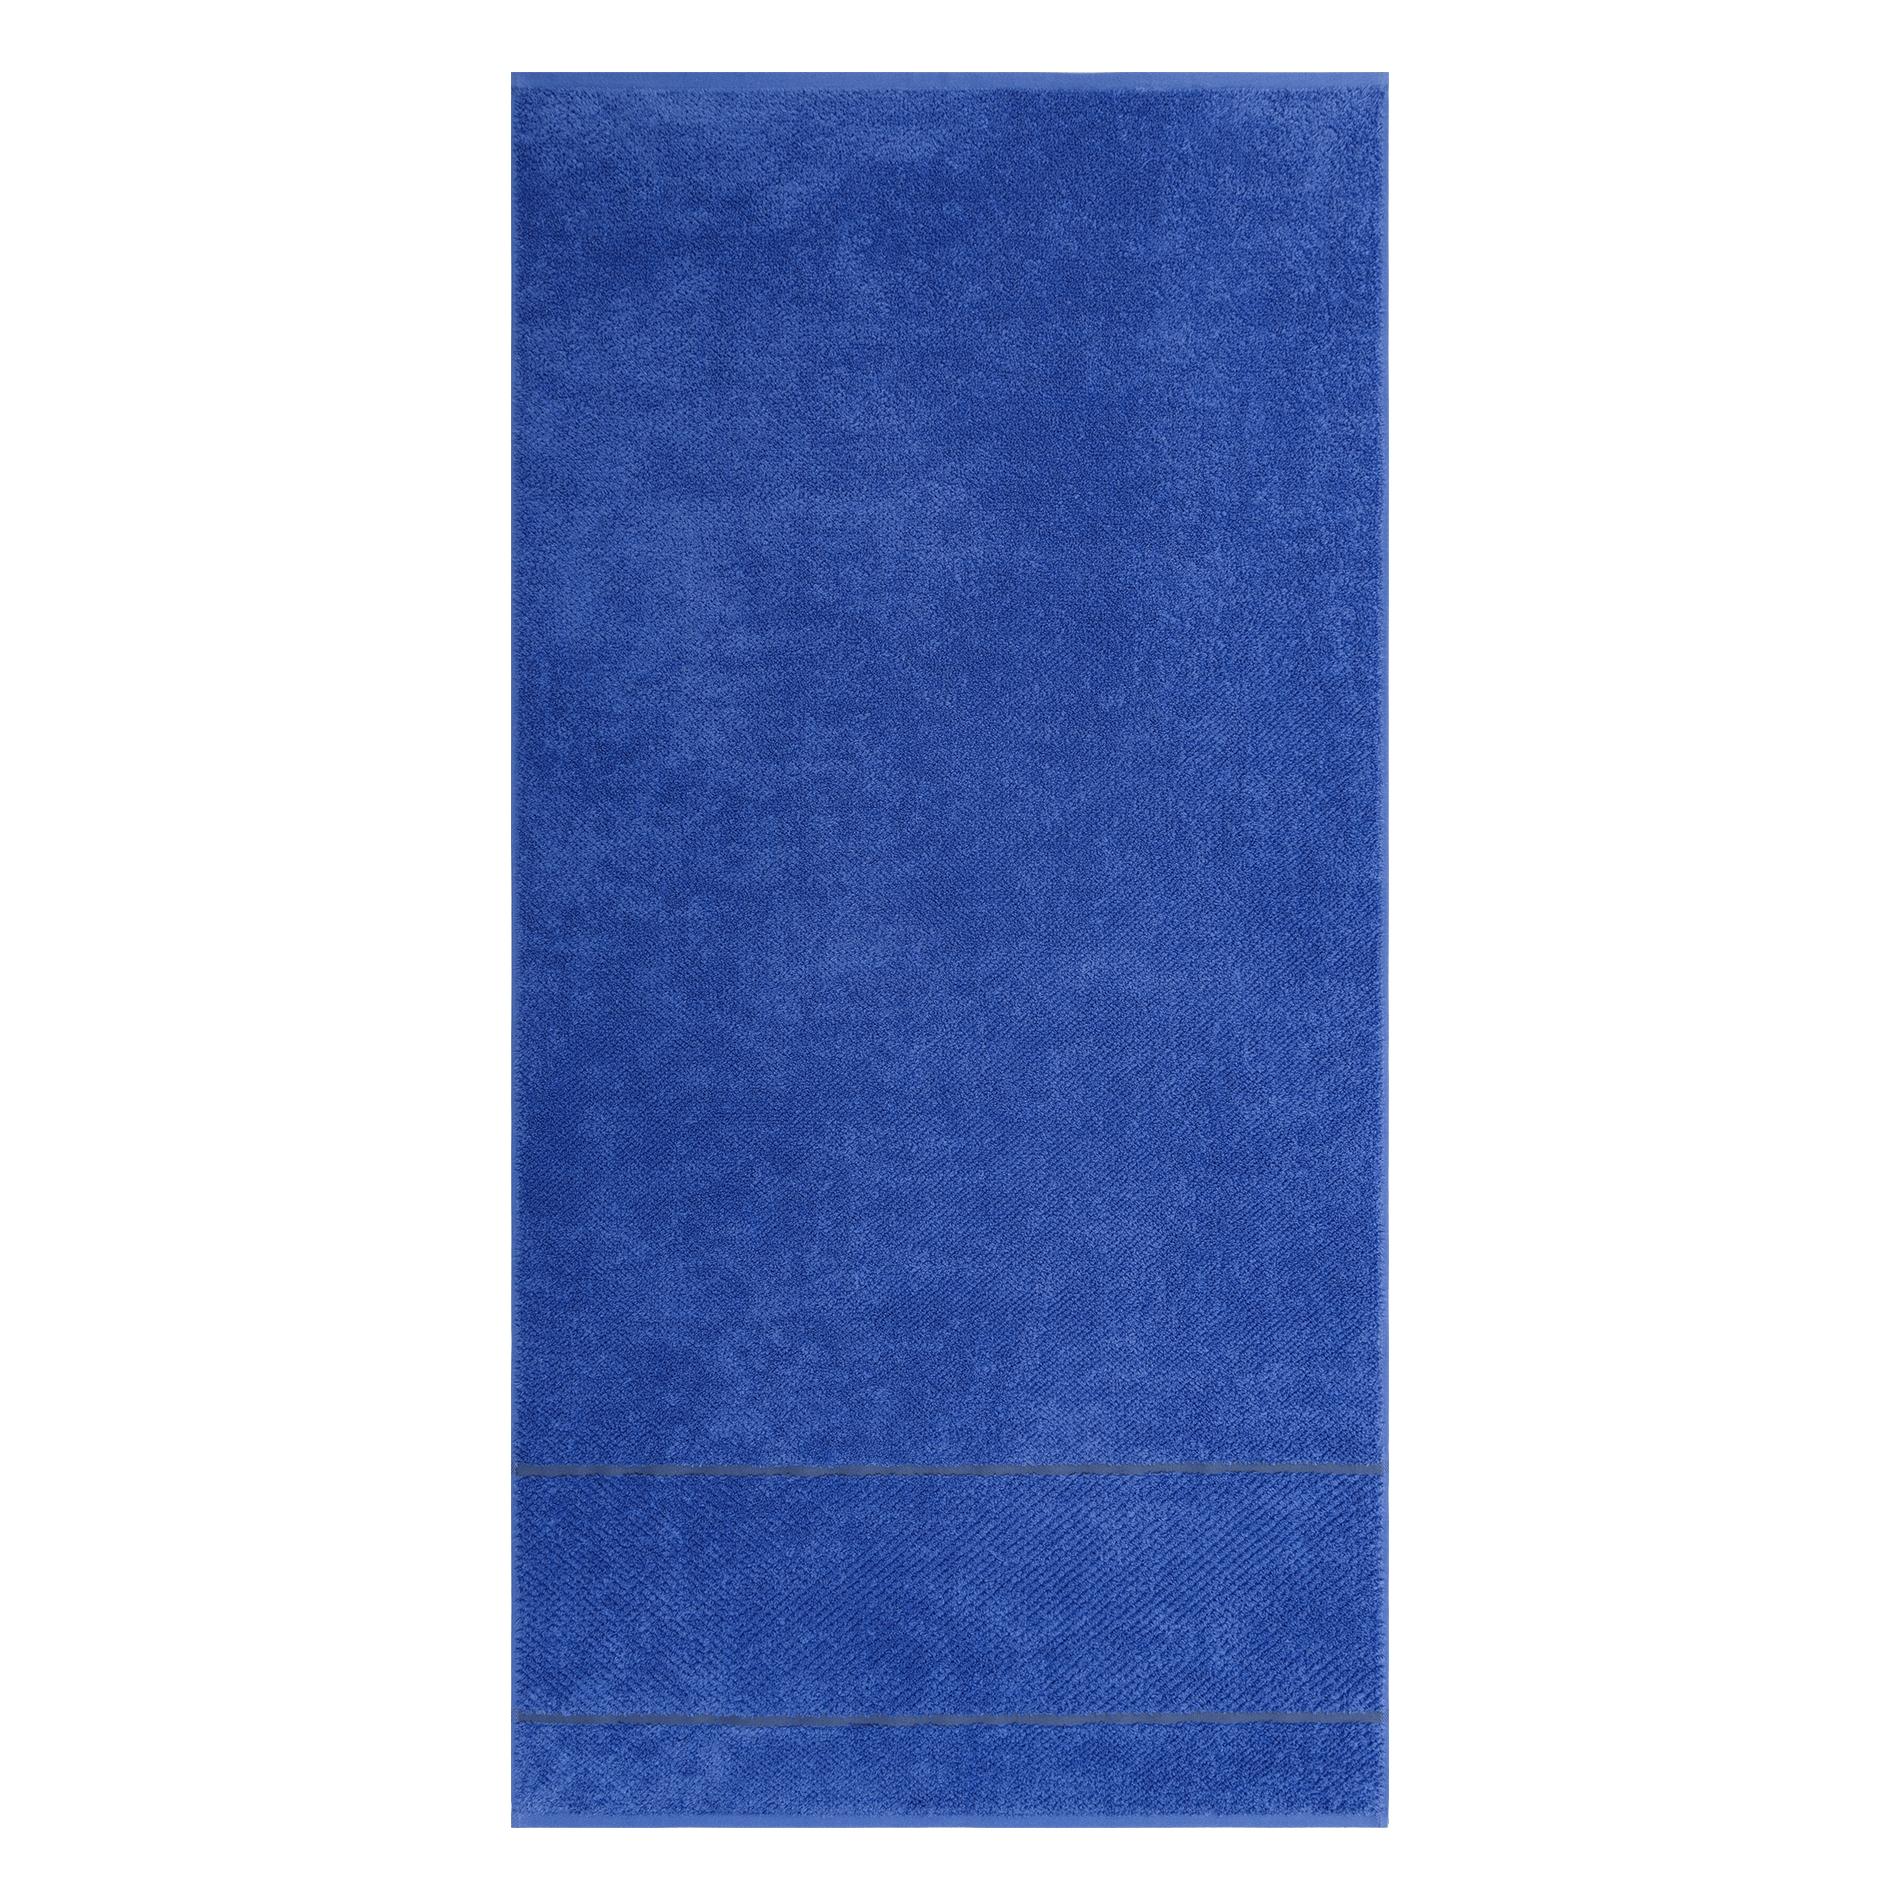 Махровое полотенце Cleanelly Fiordaliso синее 70х140 см полотенце классик темно синий р 50х90